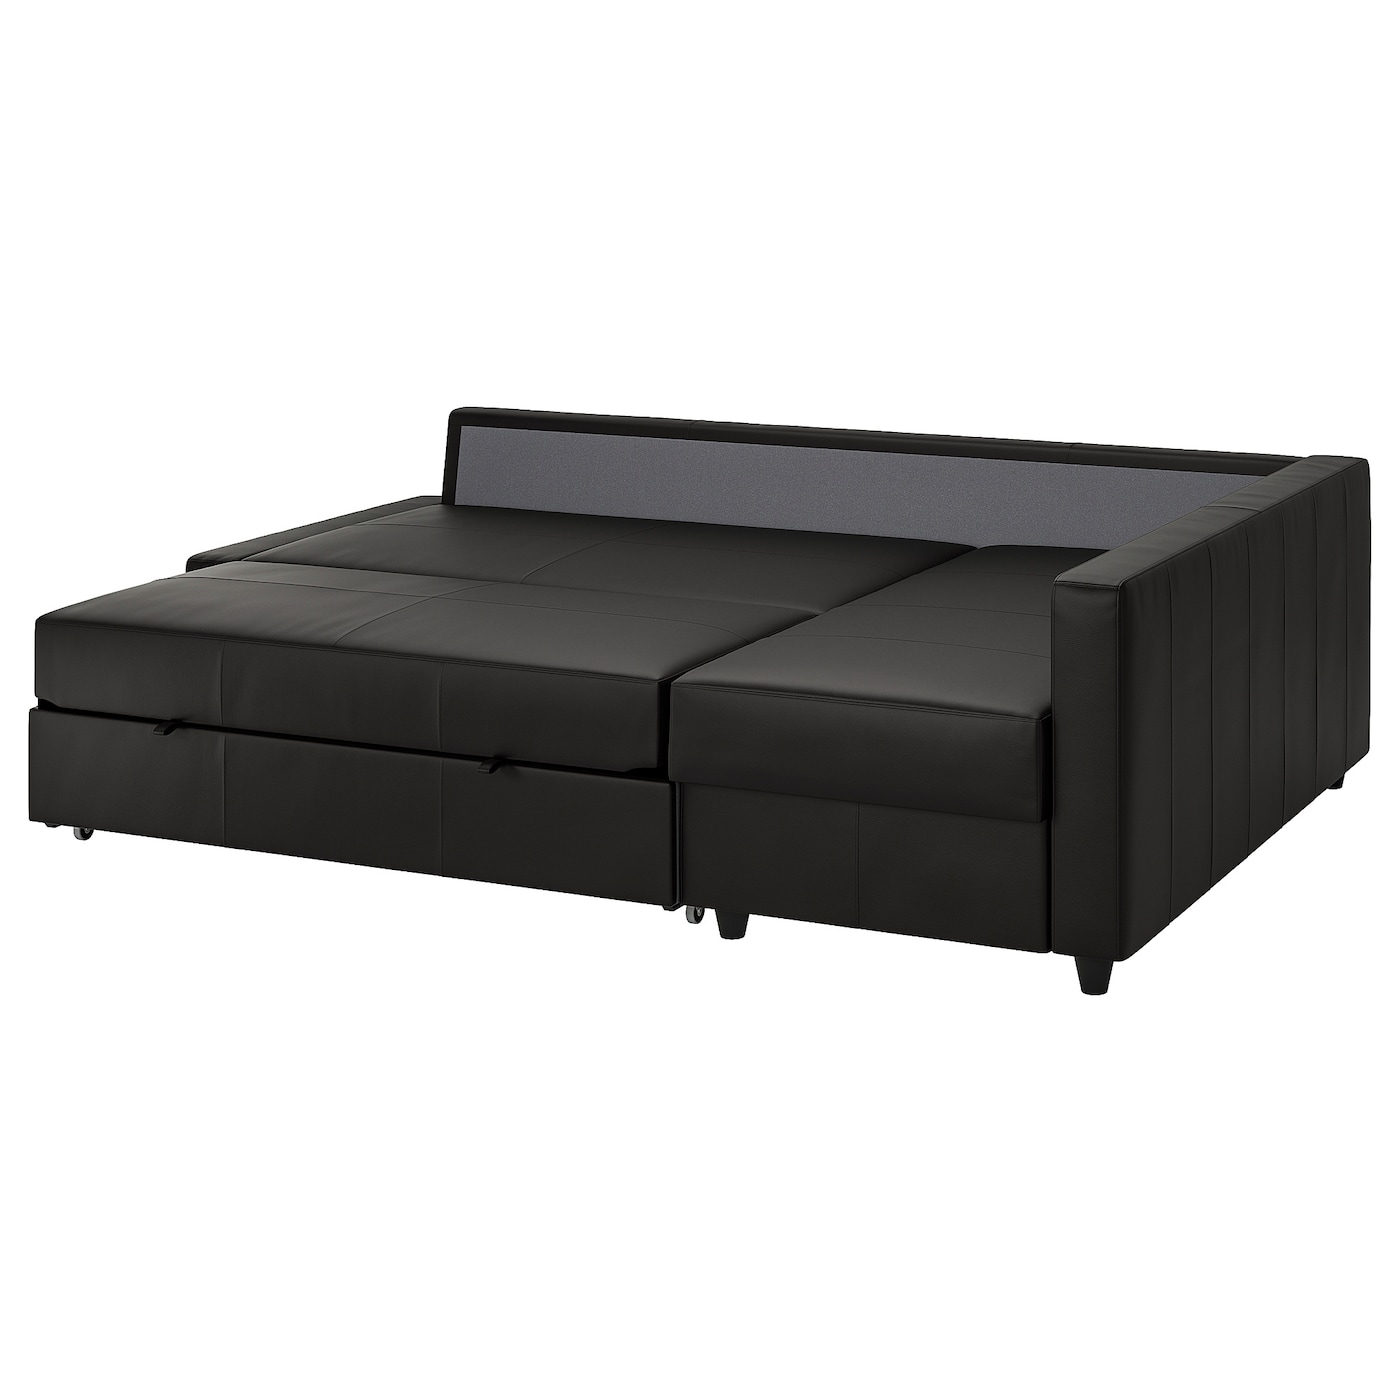 ФРИХЕТЕН Угловой диван-кровать + место для хранения, Бомстад черный FRIHETEN IKEA